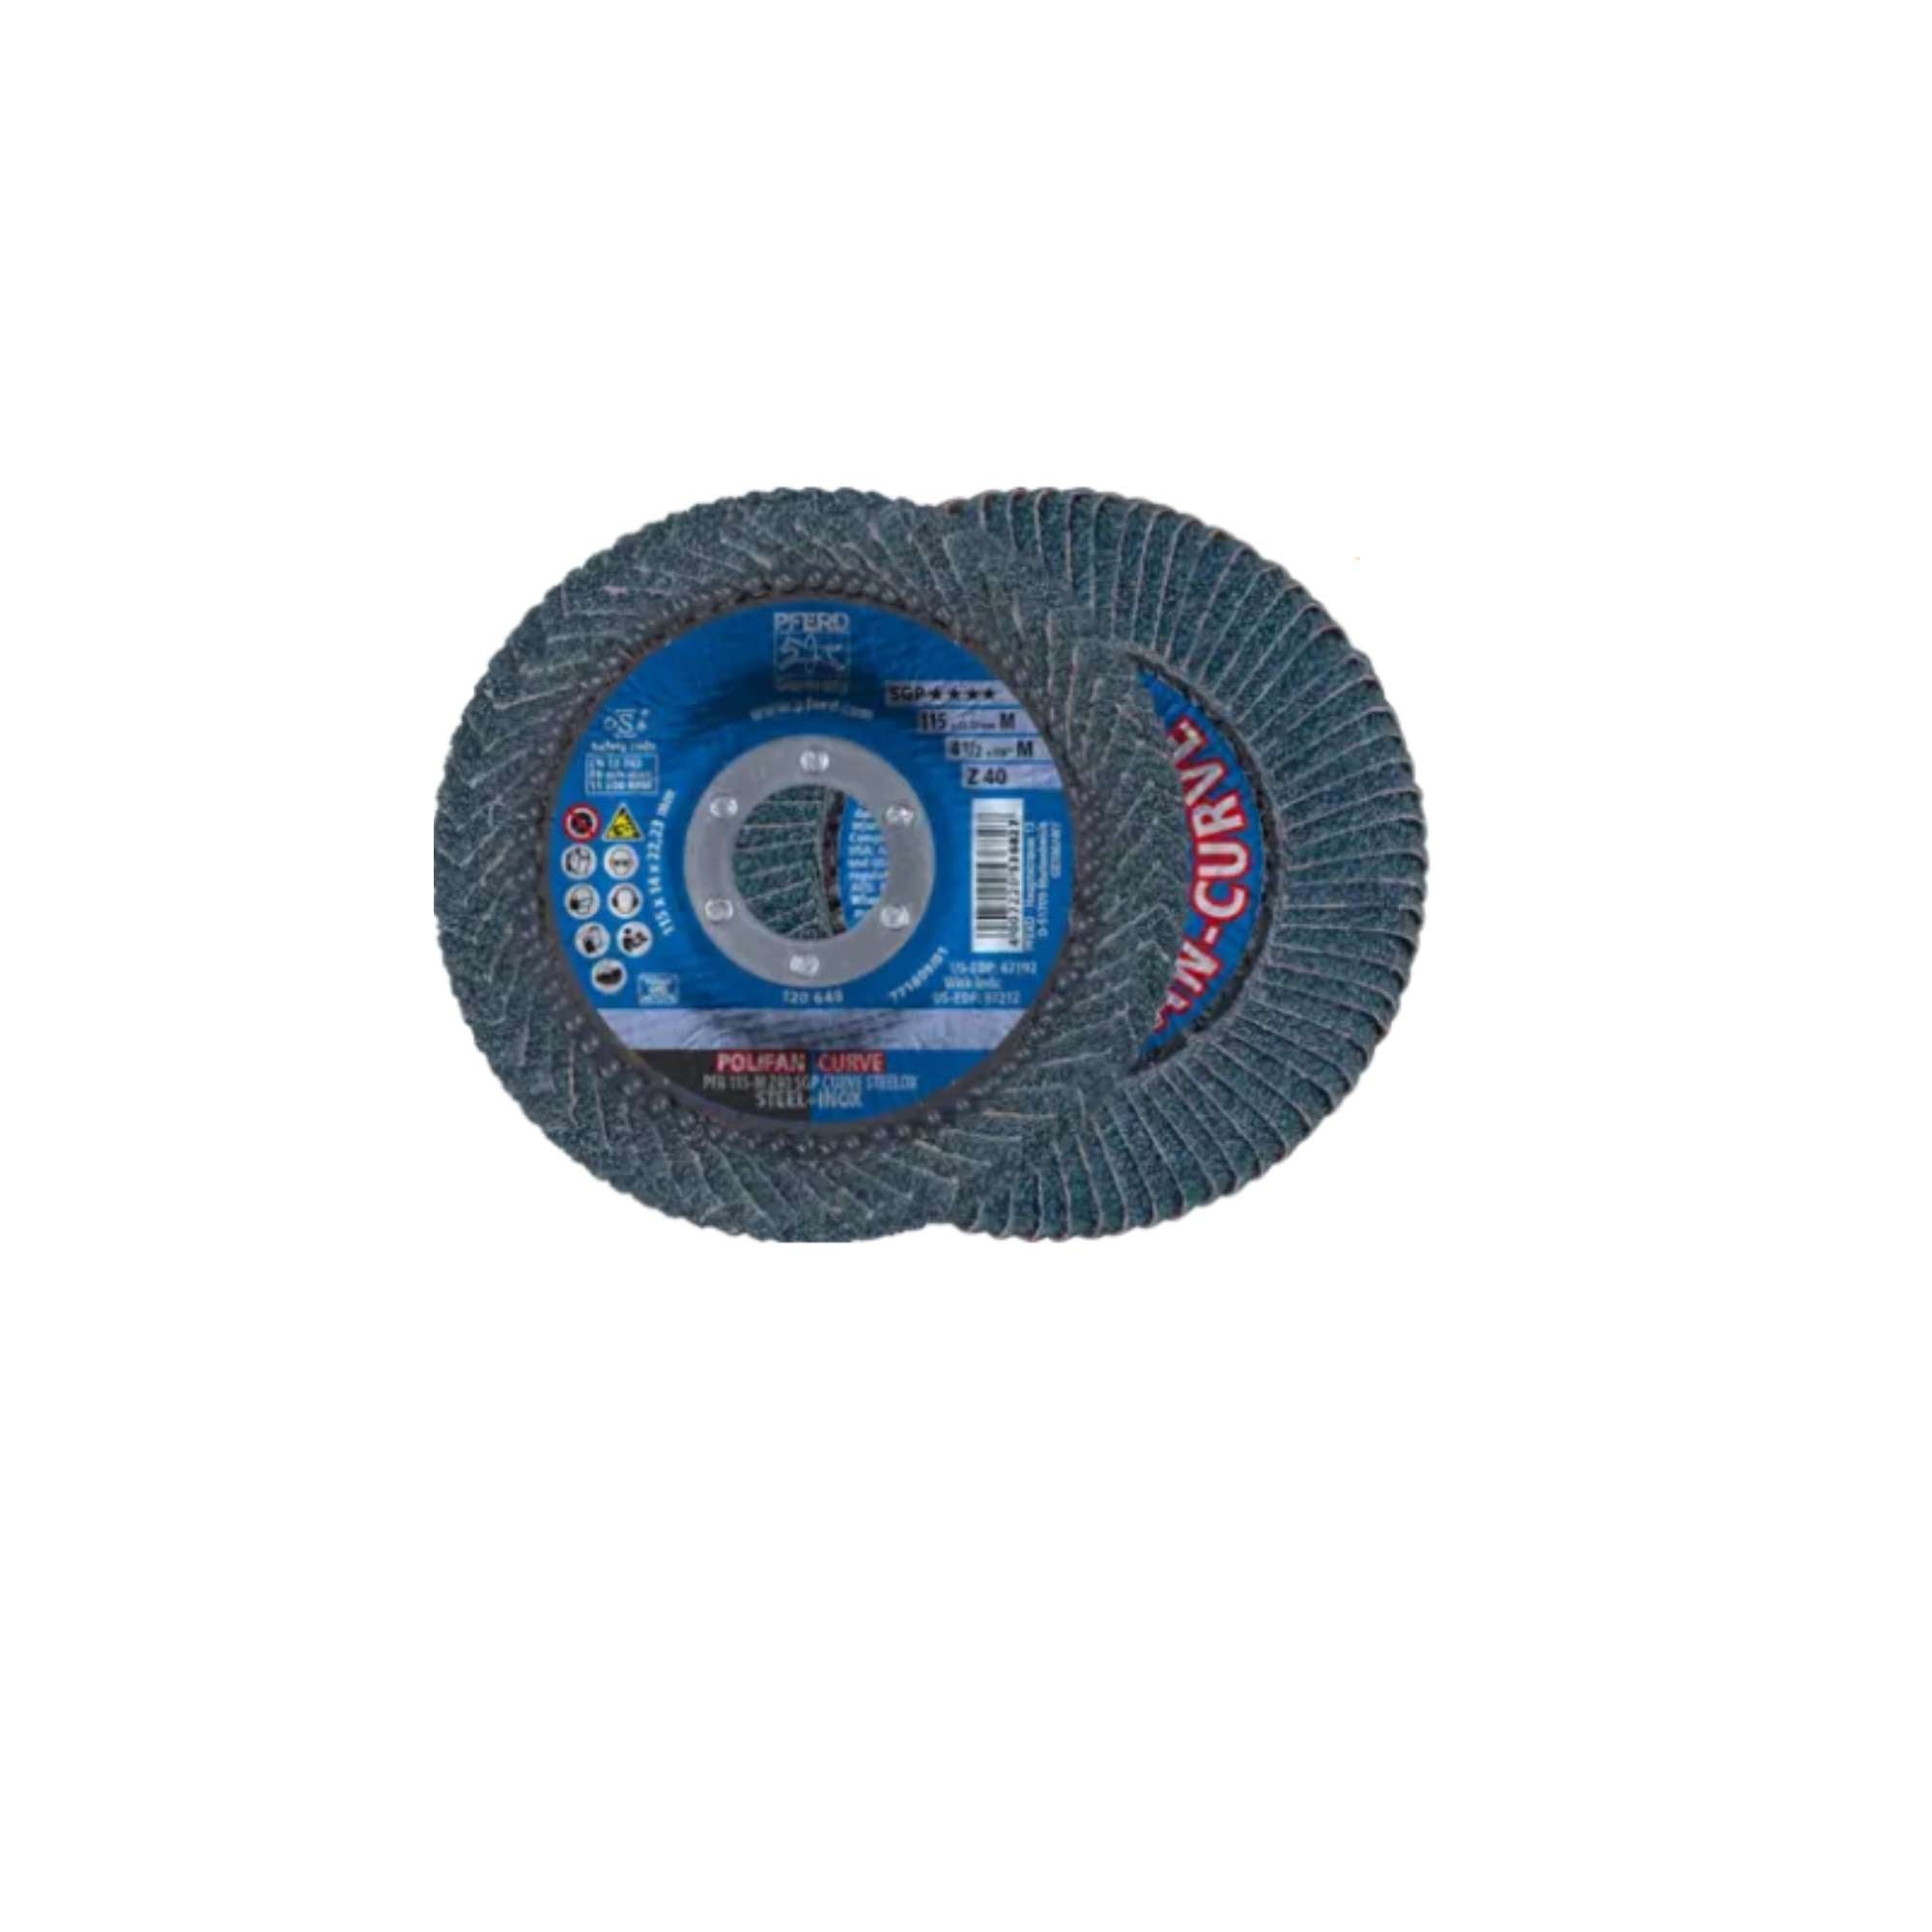 Curved Polyphan Flap Disc In Zirconium 115 - Pferd 67689032